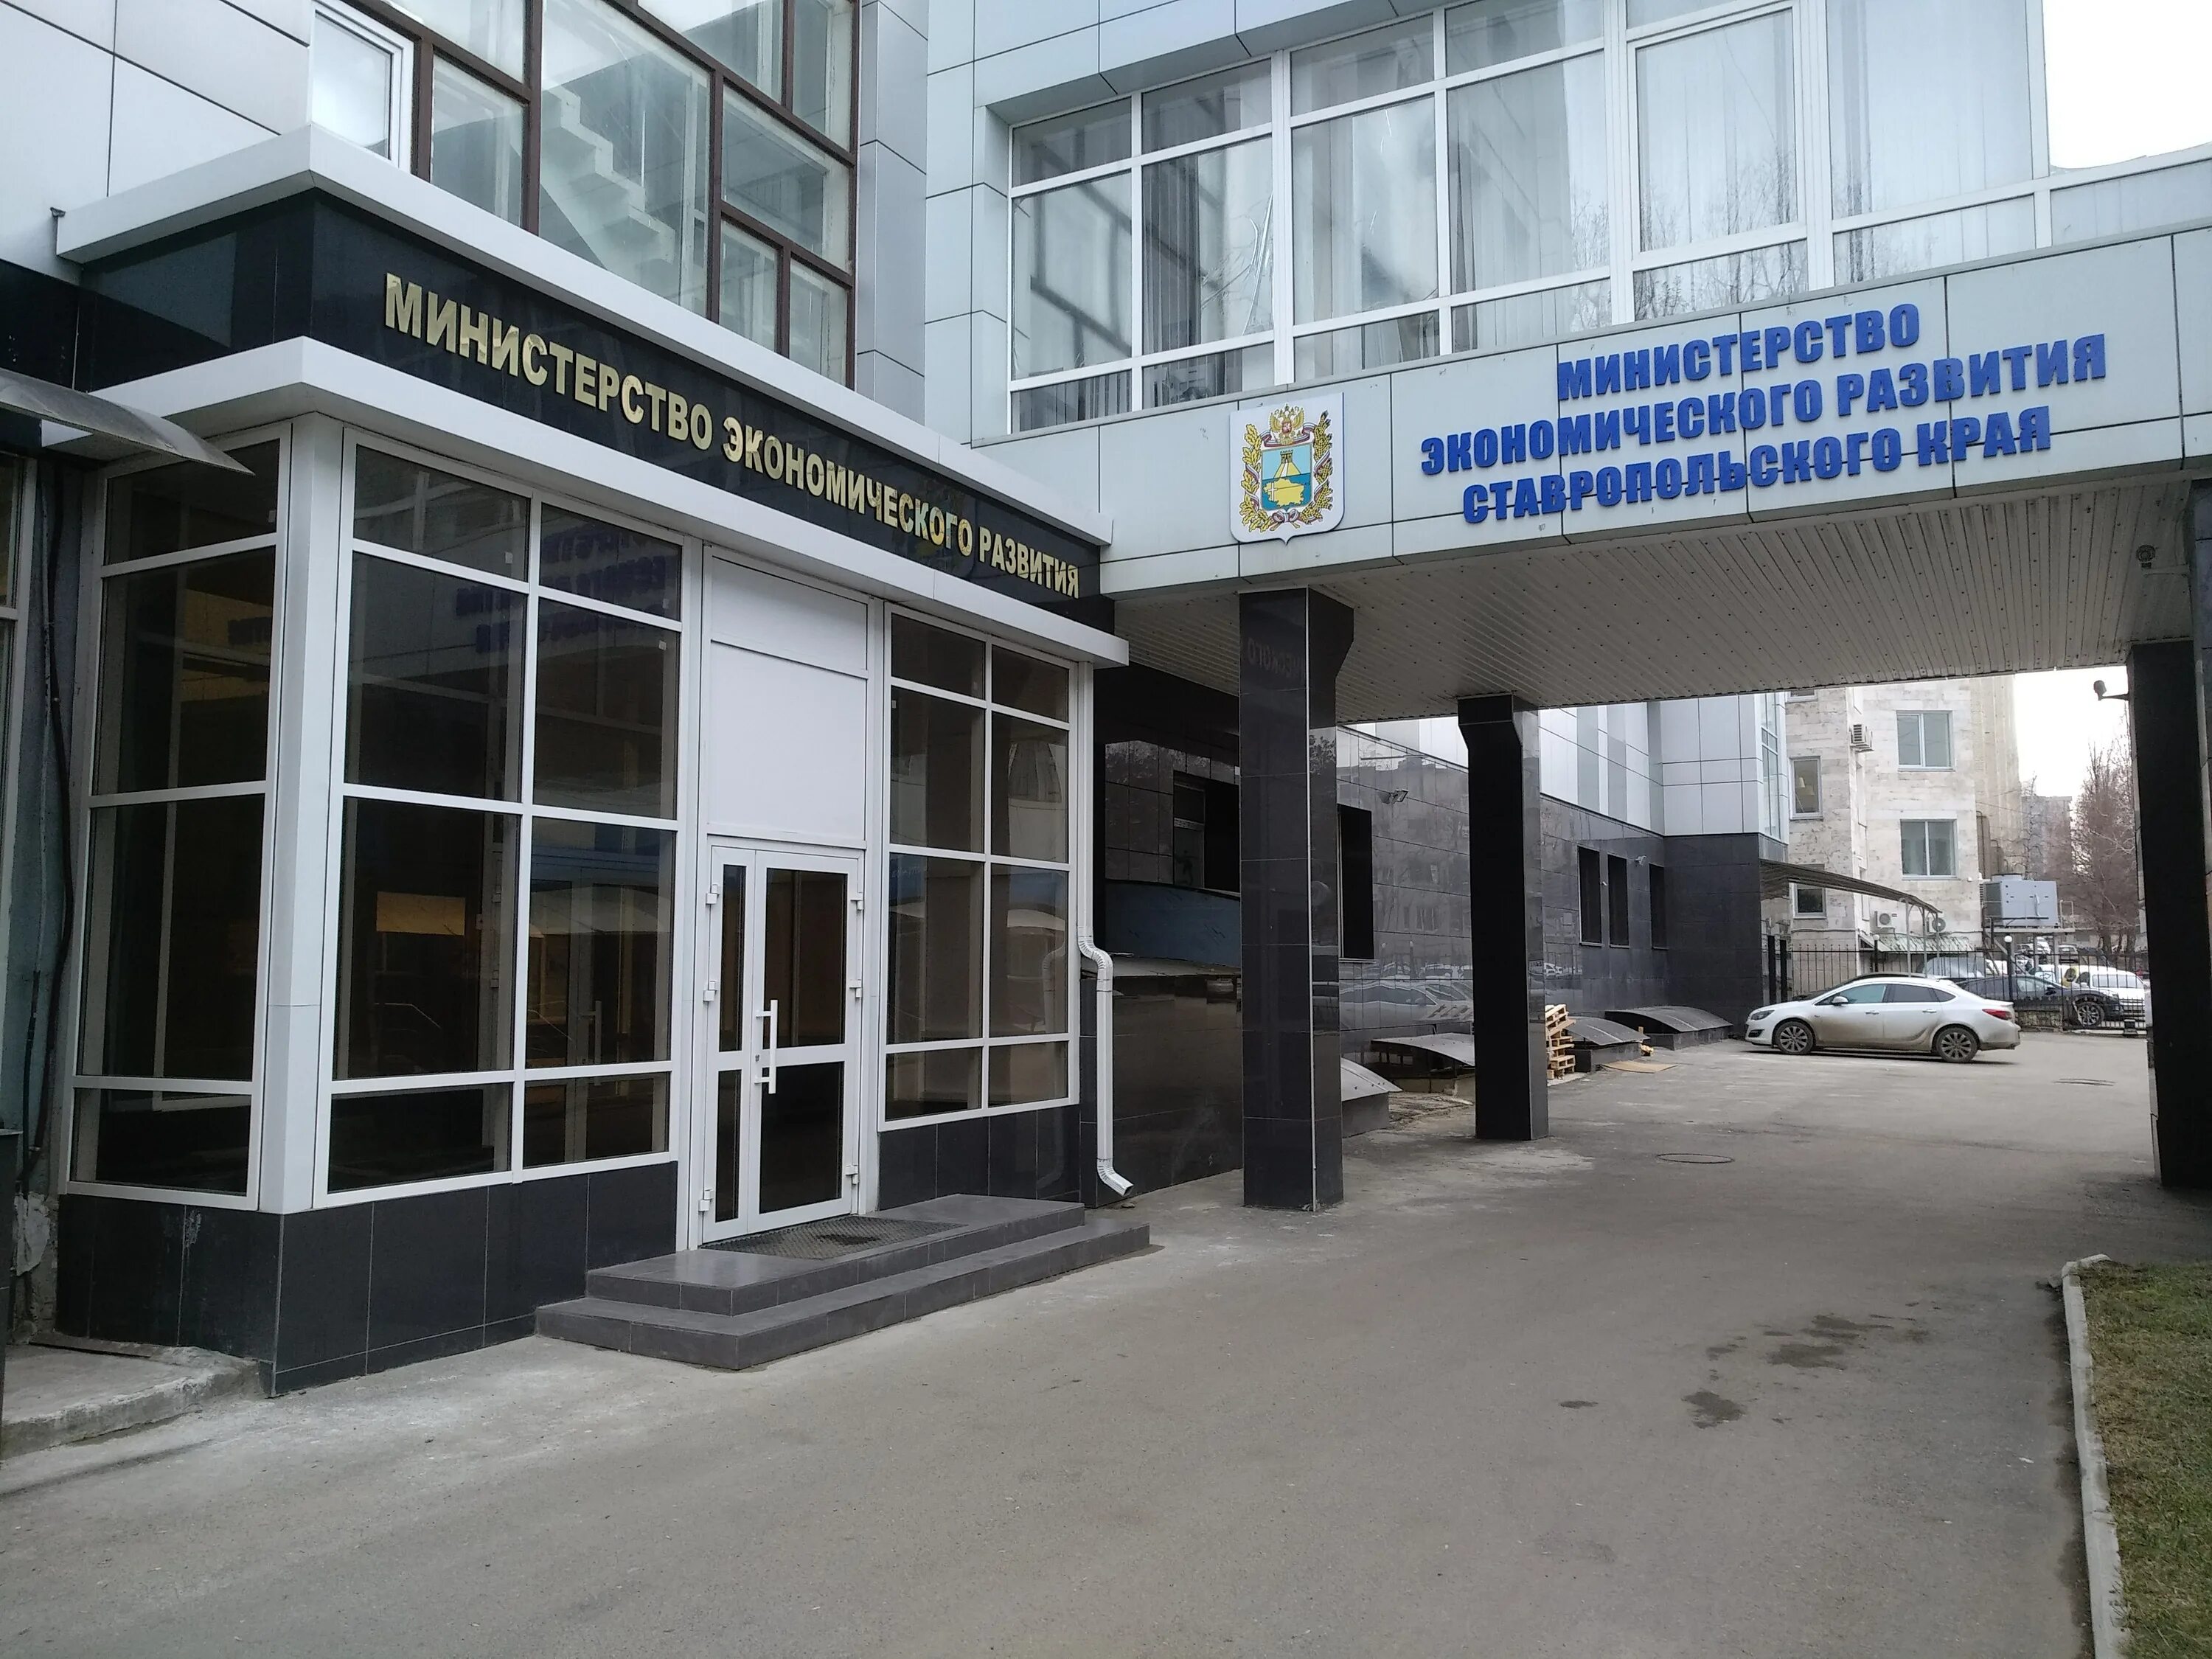 Министерство транспорта ставропольского